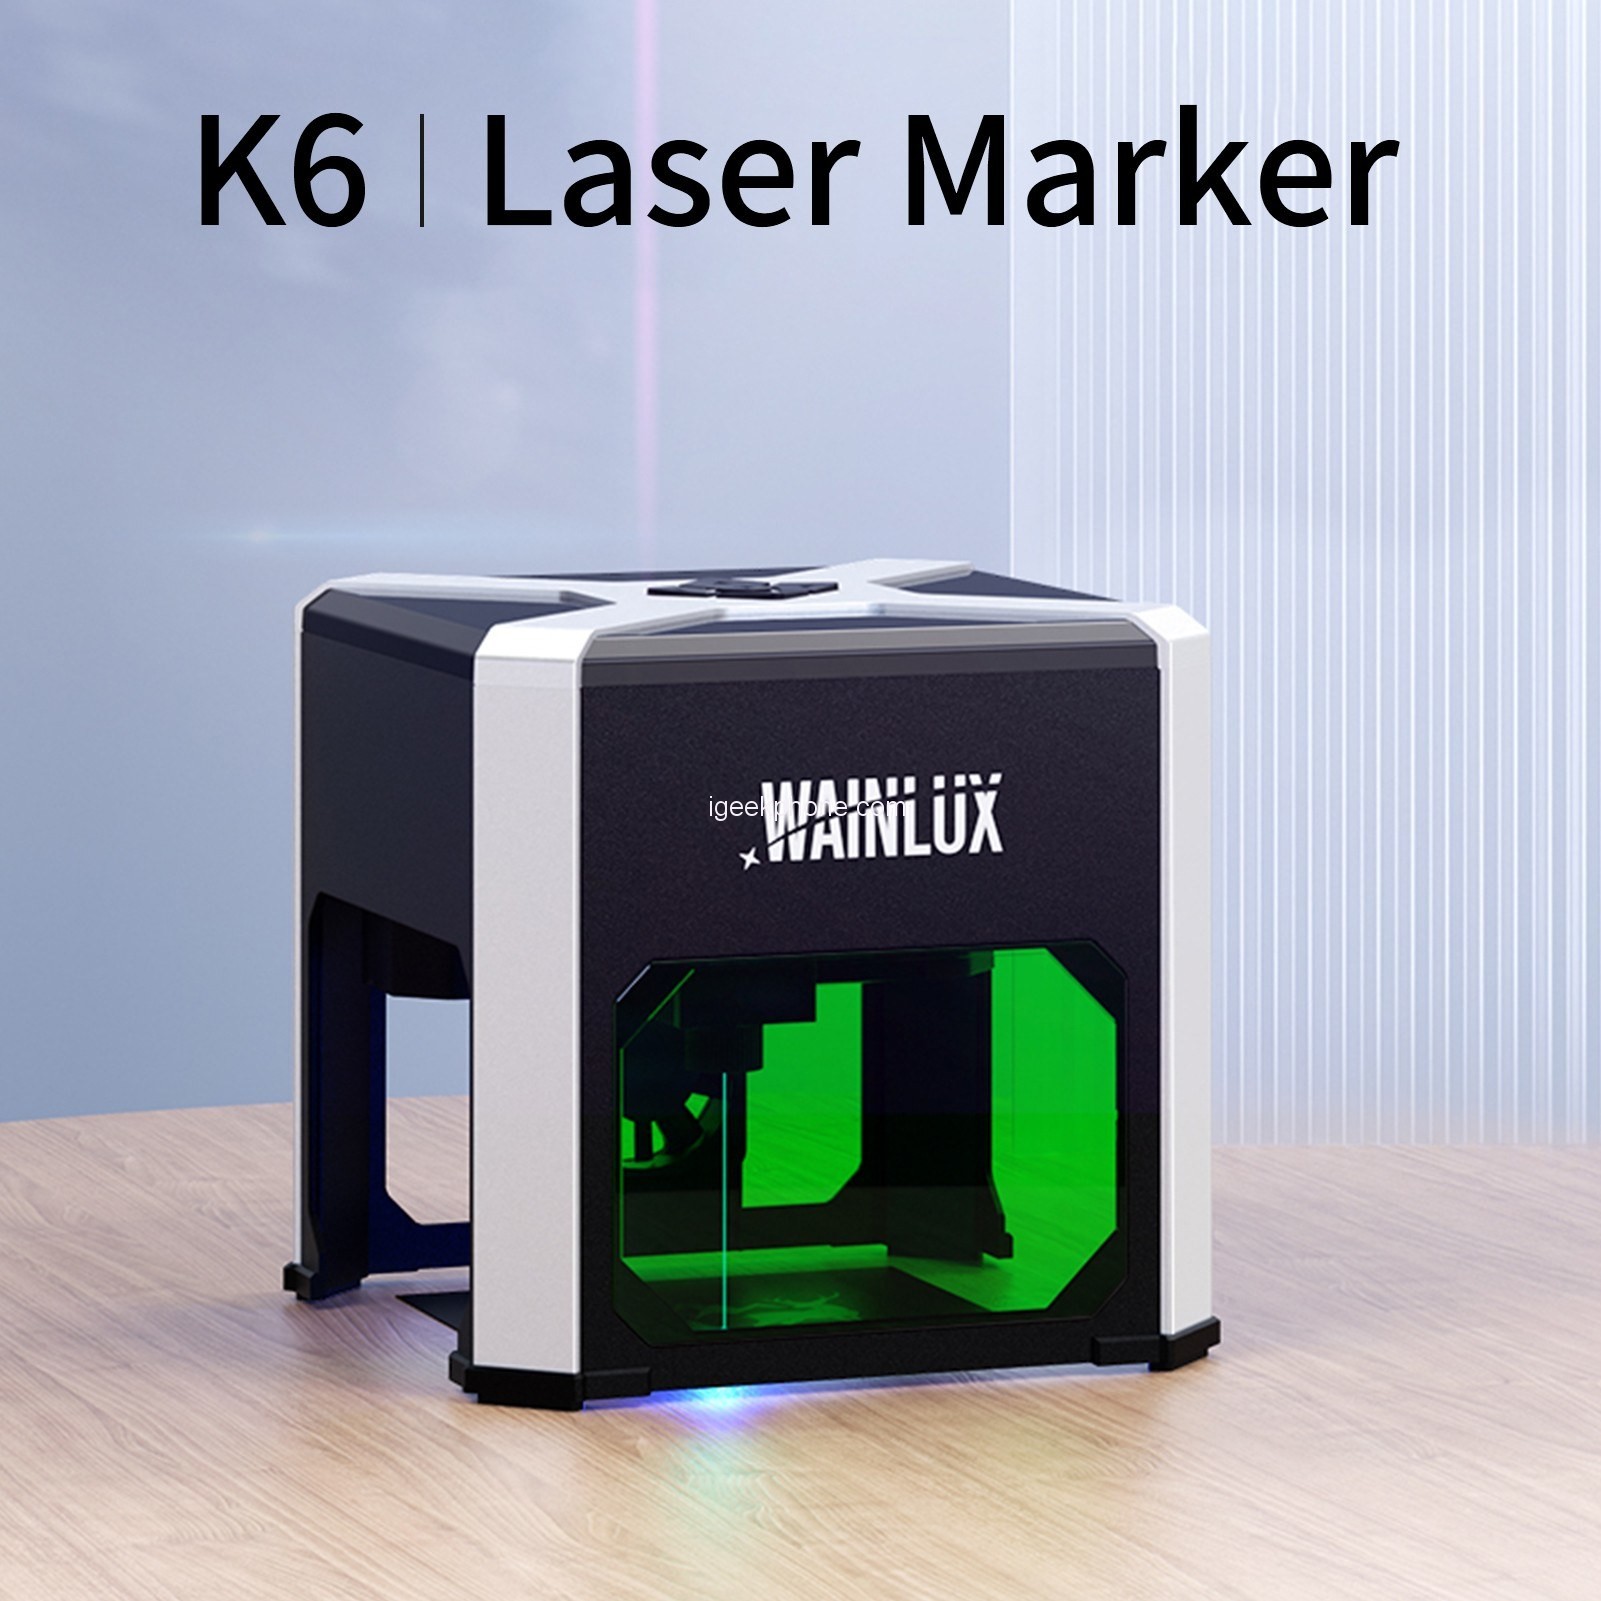 WAINLUX K6 Laser Marking Machine 